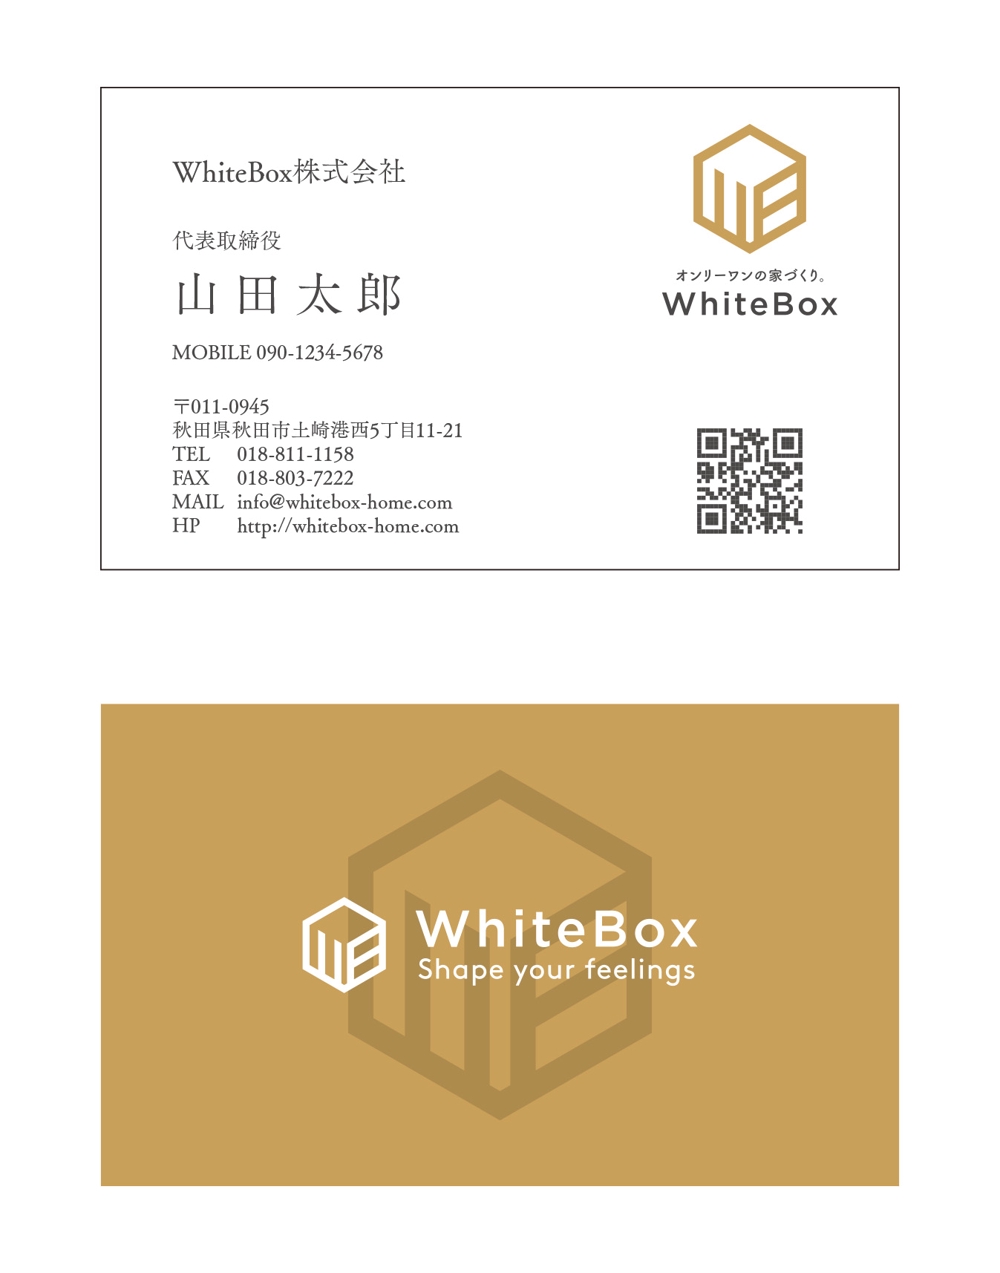 WhiteBox_ver1.jpg